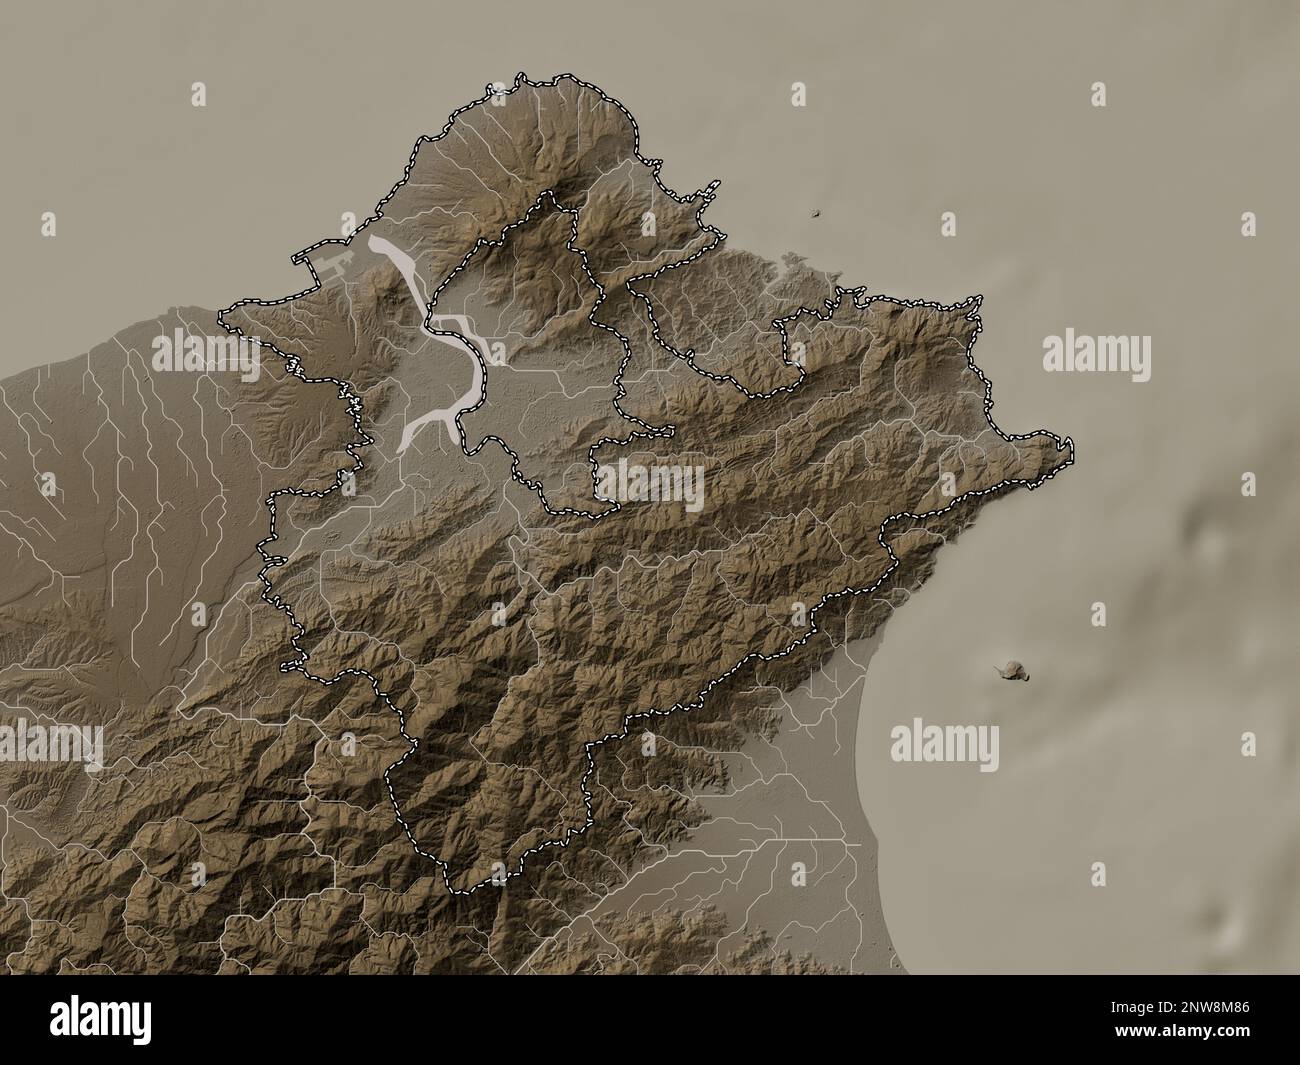 New Taipei City, Sondergemeinde Taiwan. Höhenplan in Sepia-Tönen mit Seen und Flüssen Stockfoto